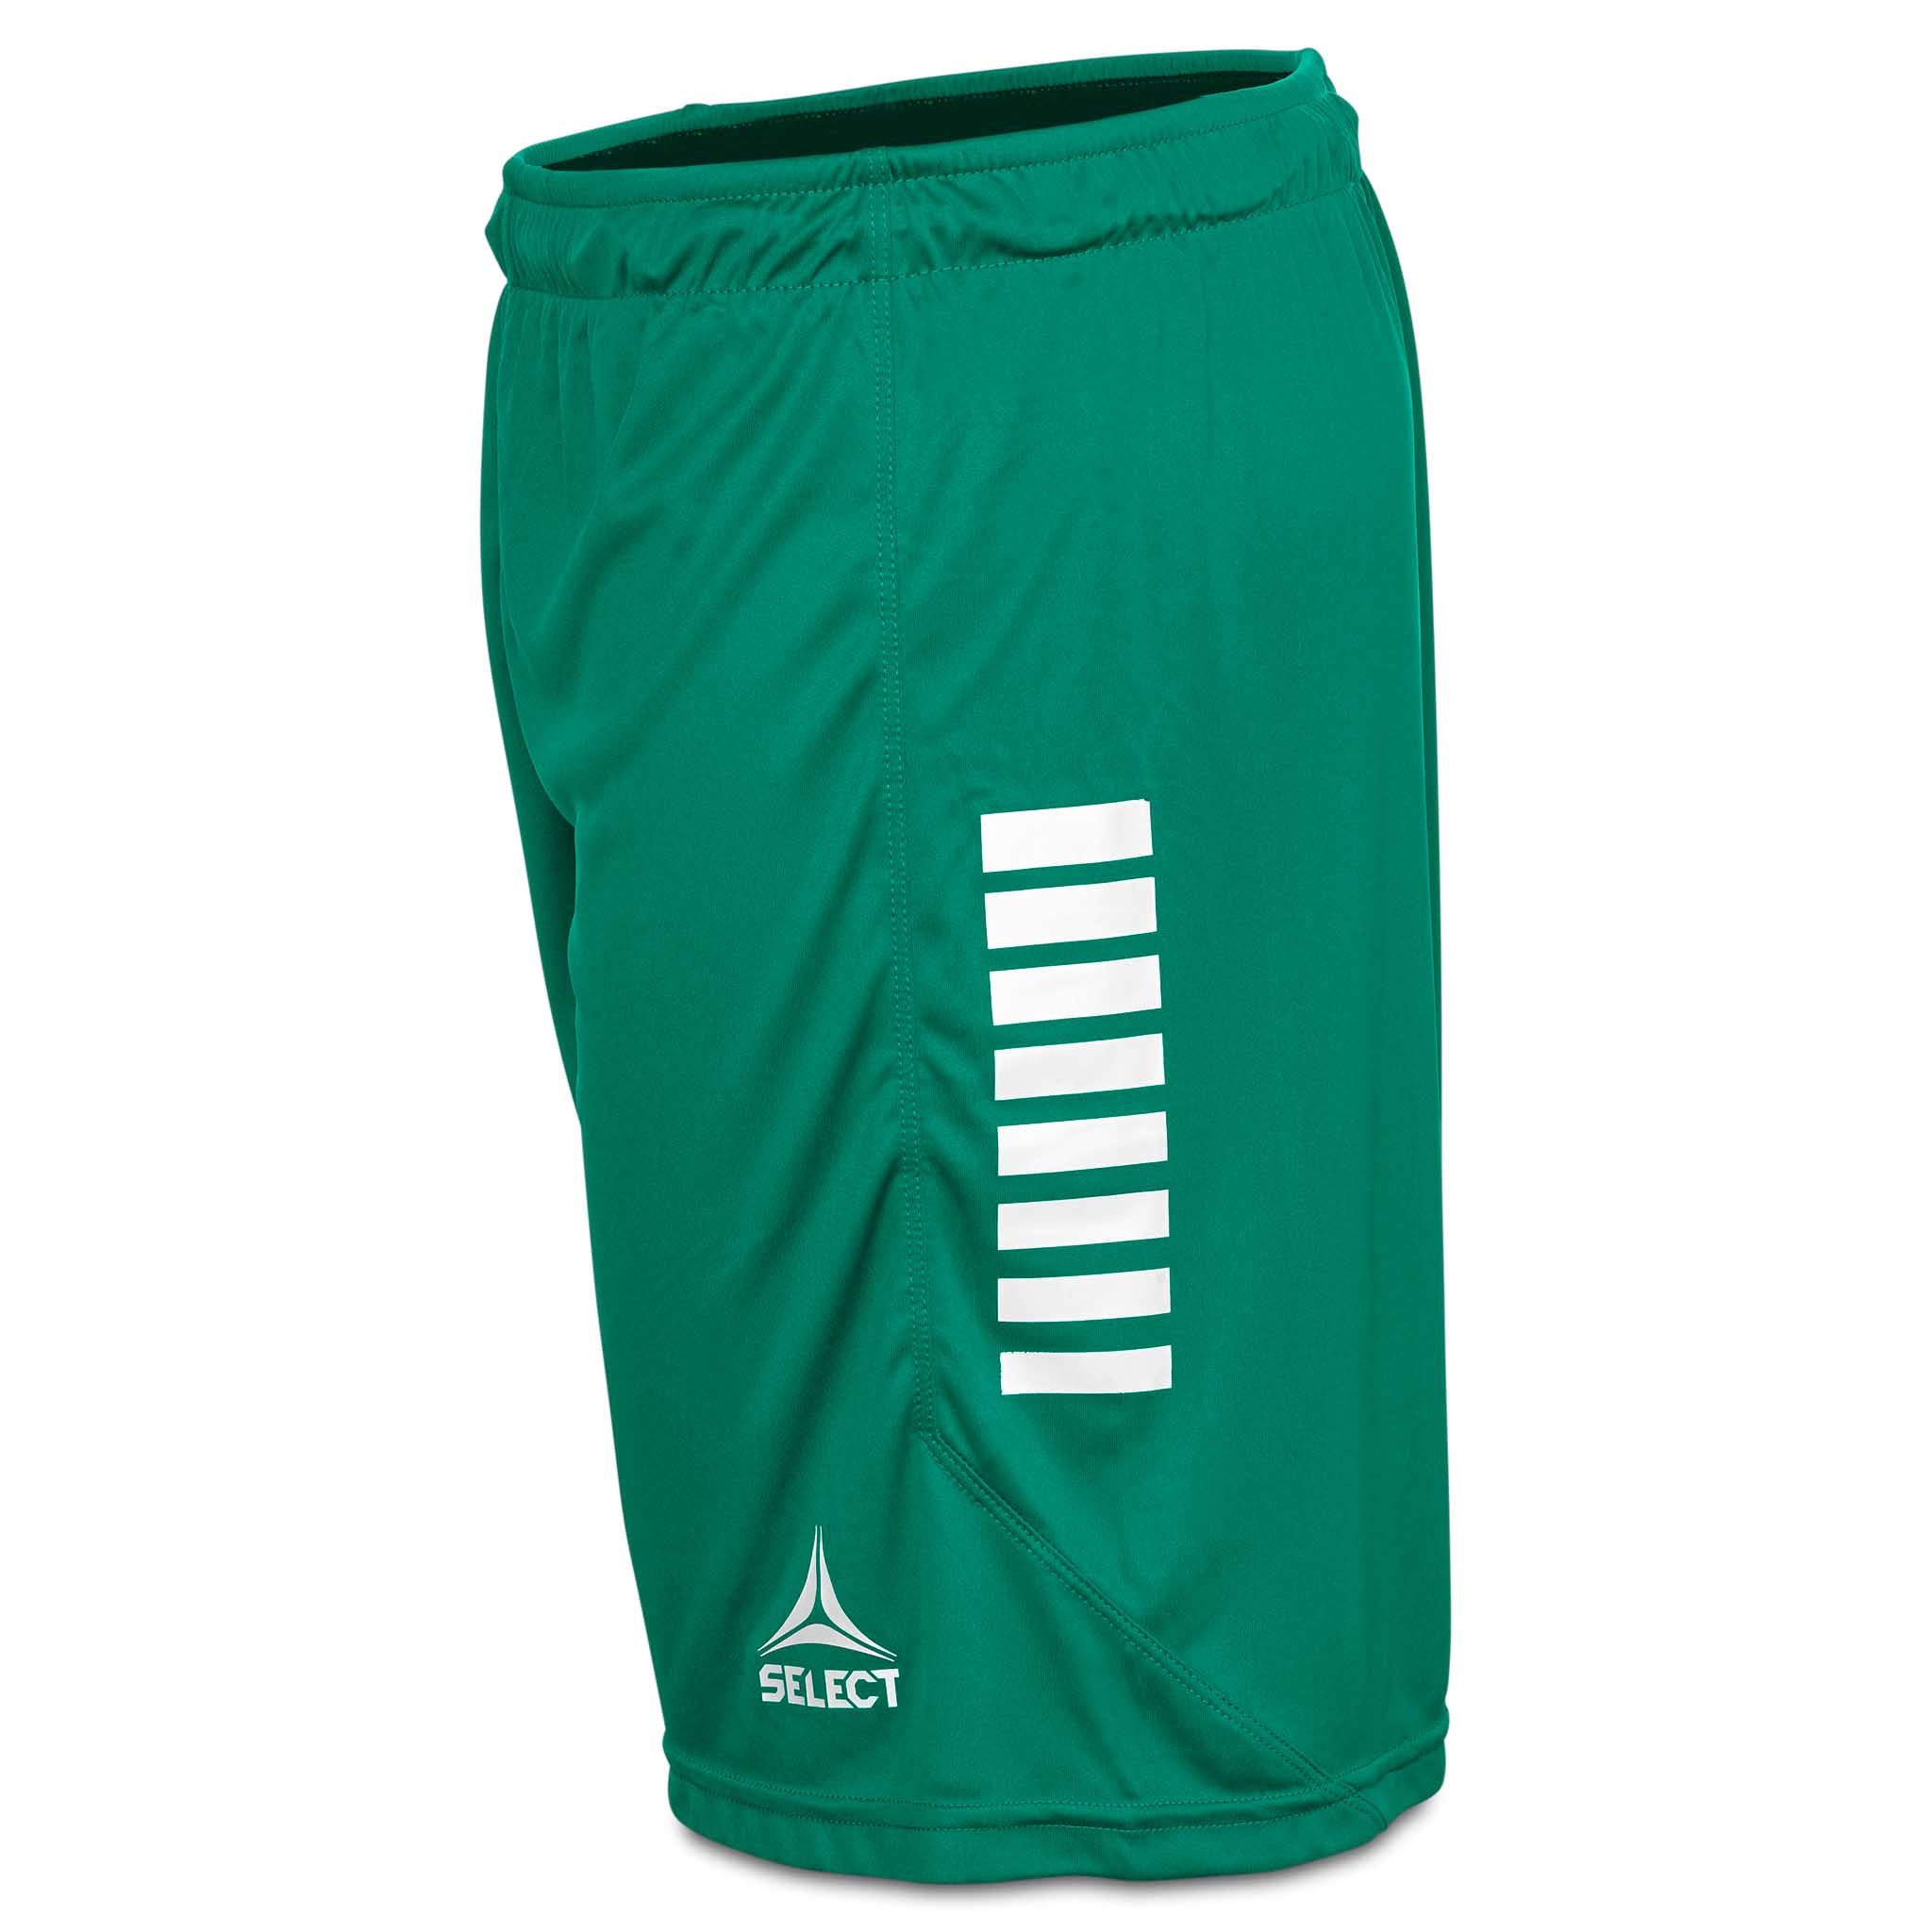 Monaco shorts - Barn #färg_grön/vit